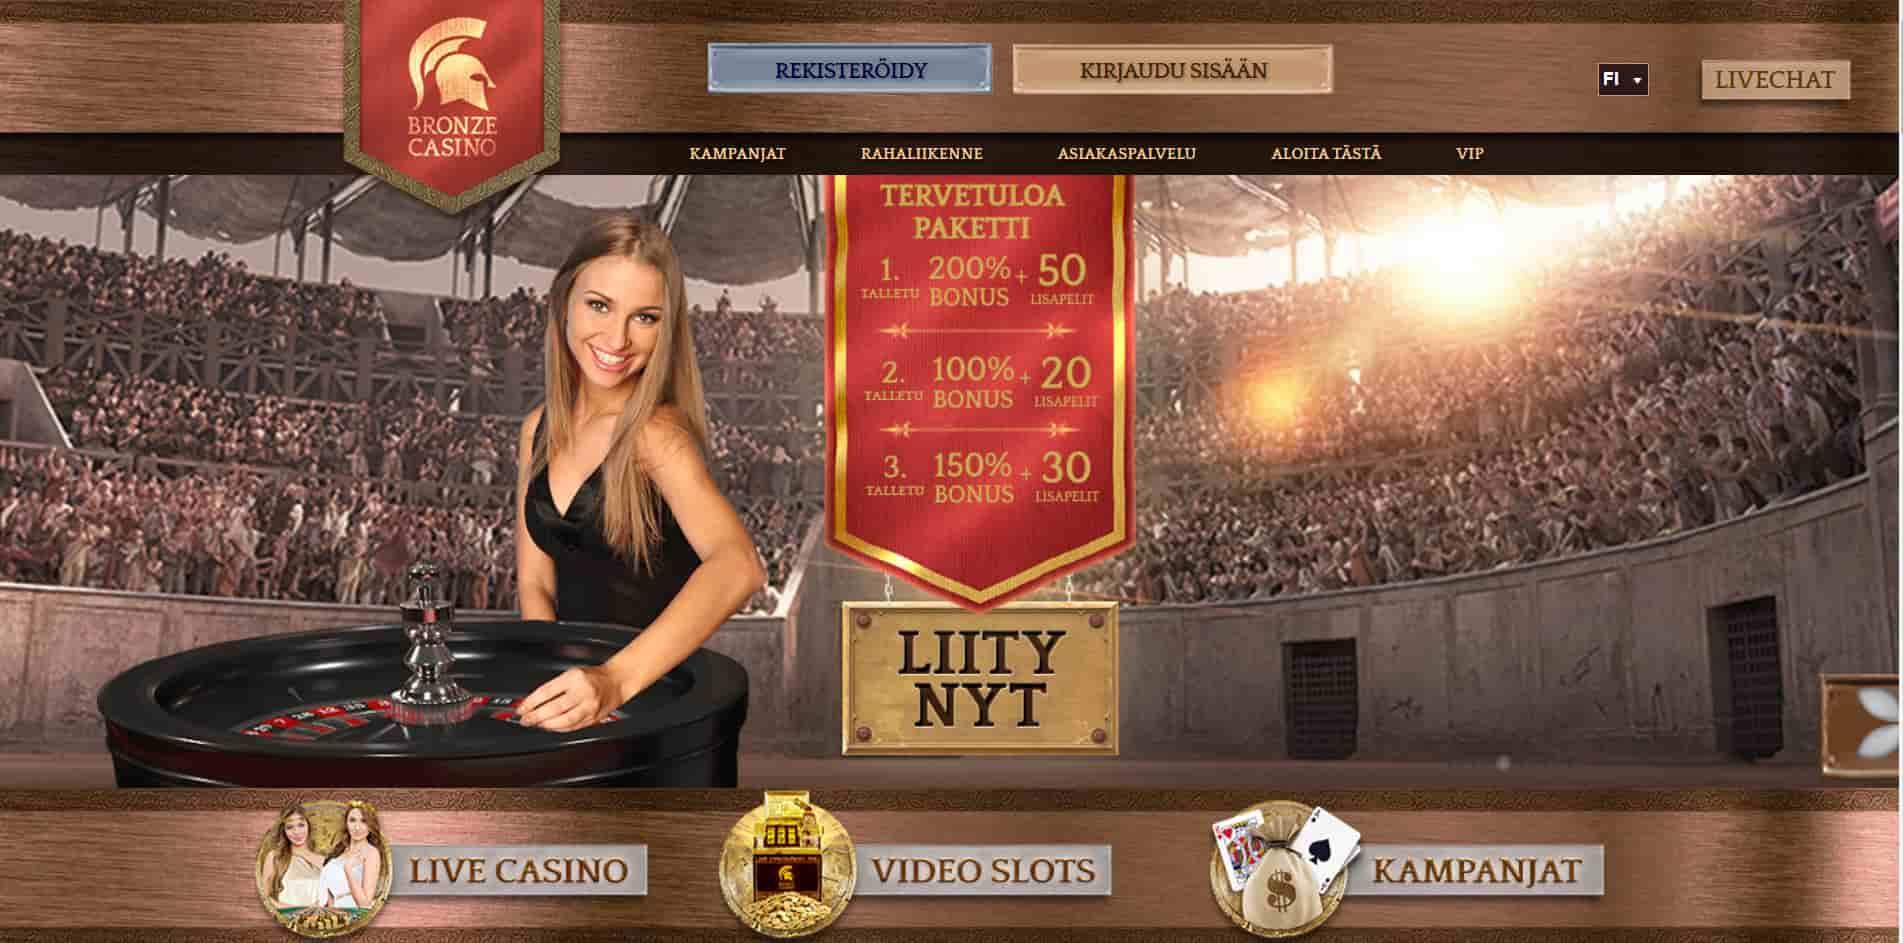 Bronze casino homepage